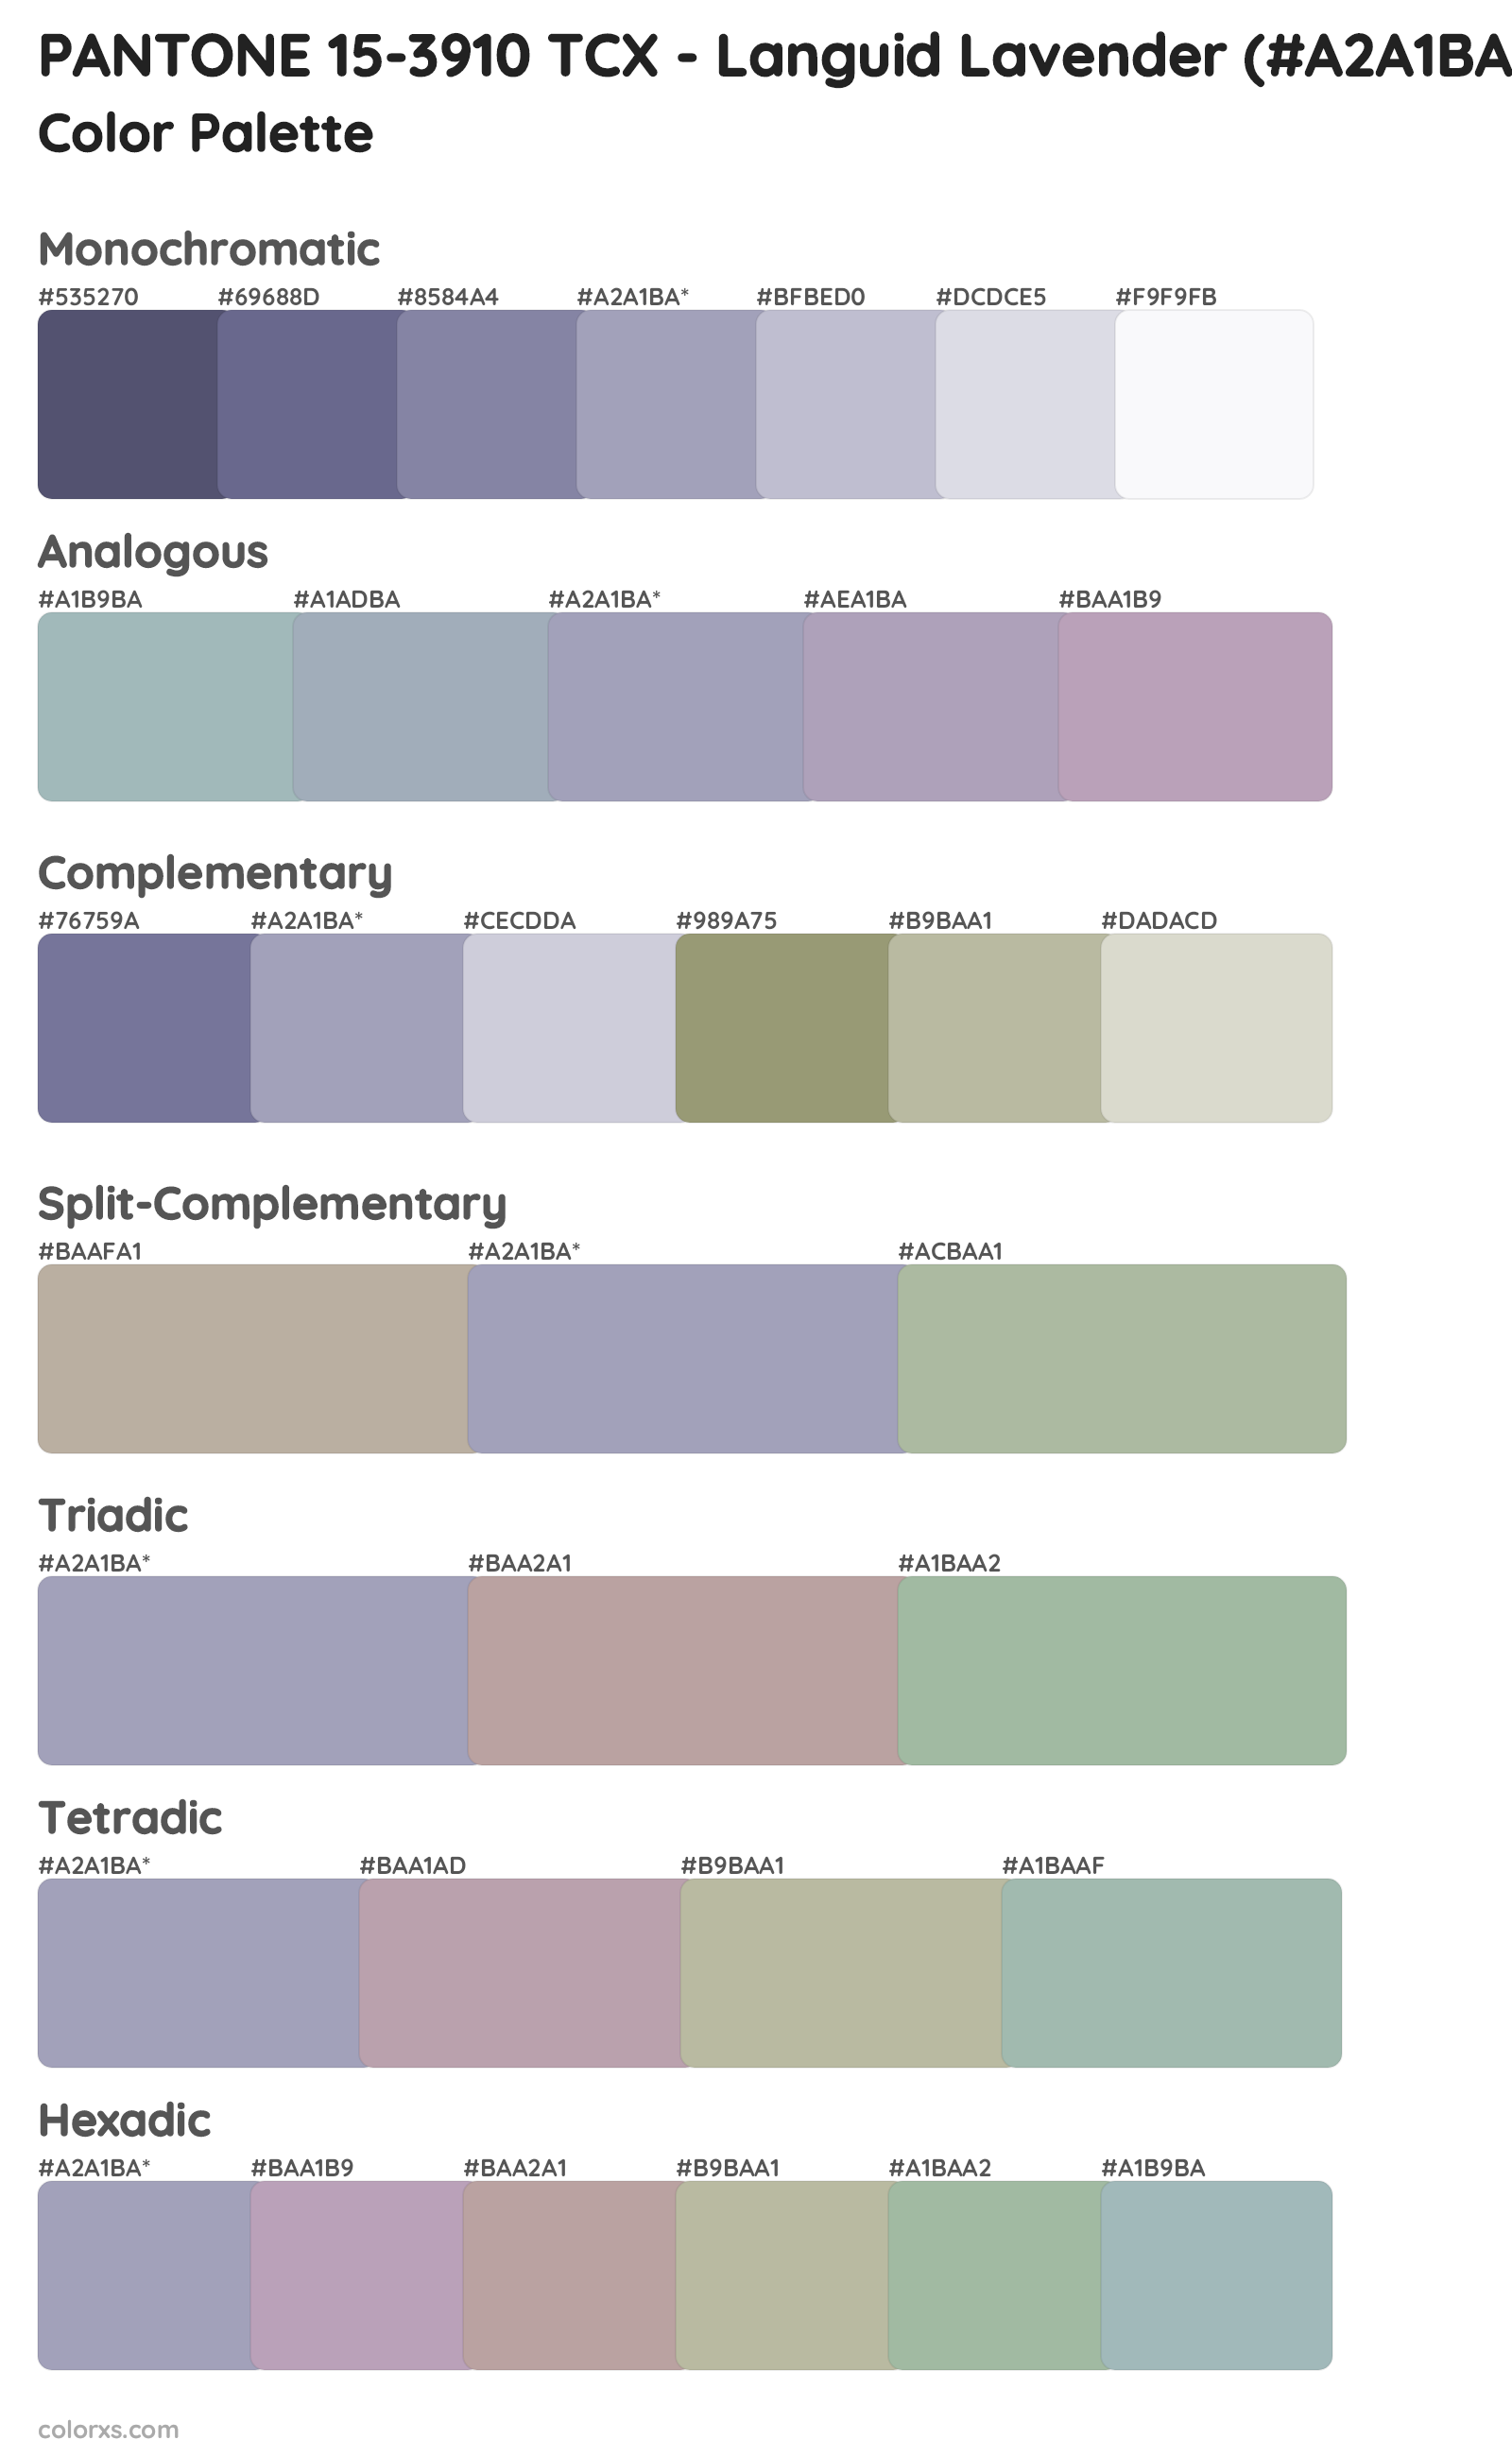 PANTONE 15-3910 TCX - Languid Lavender Color Scheme Palettes